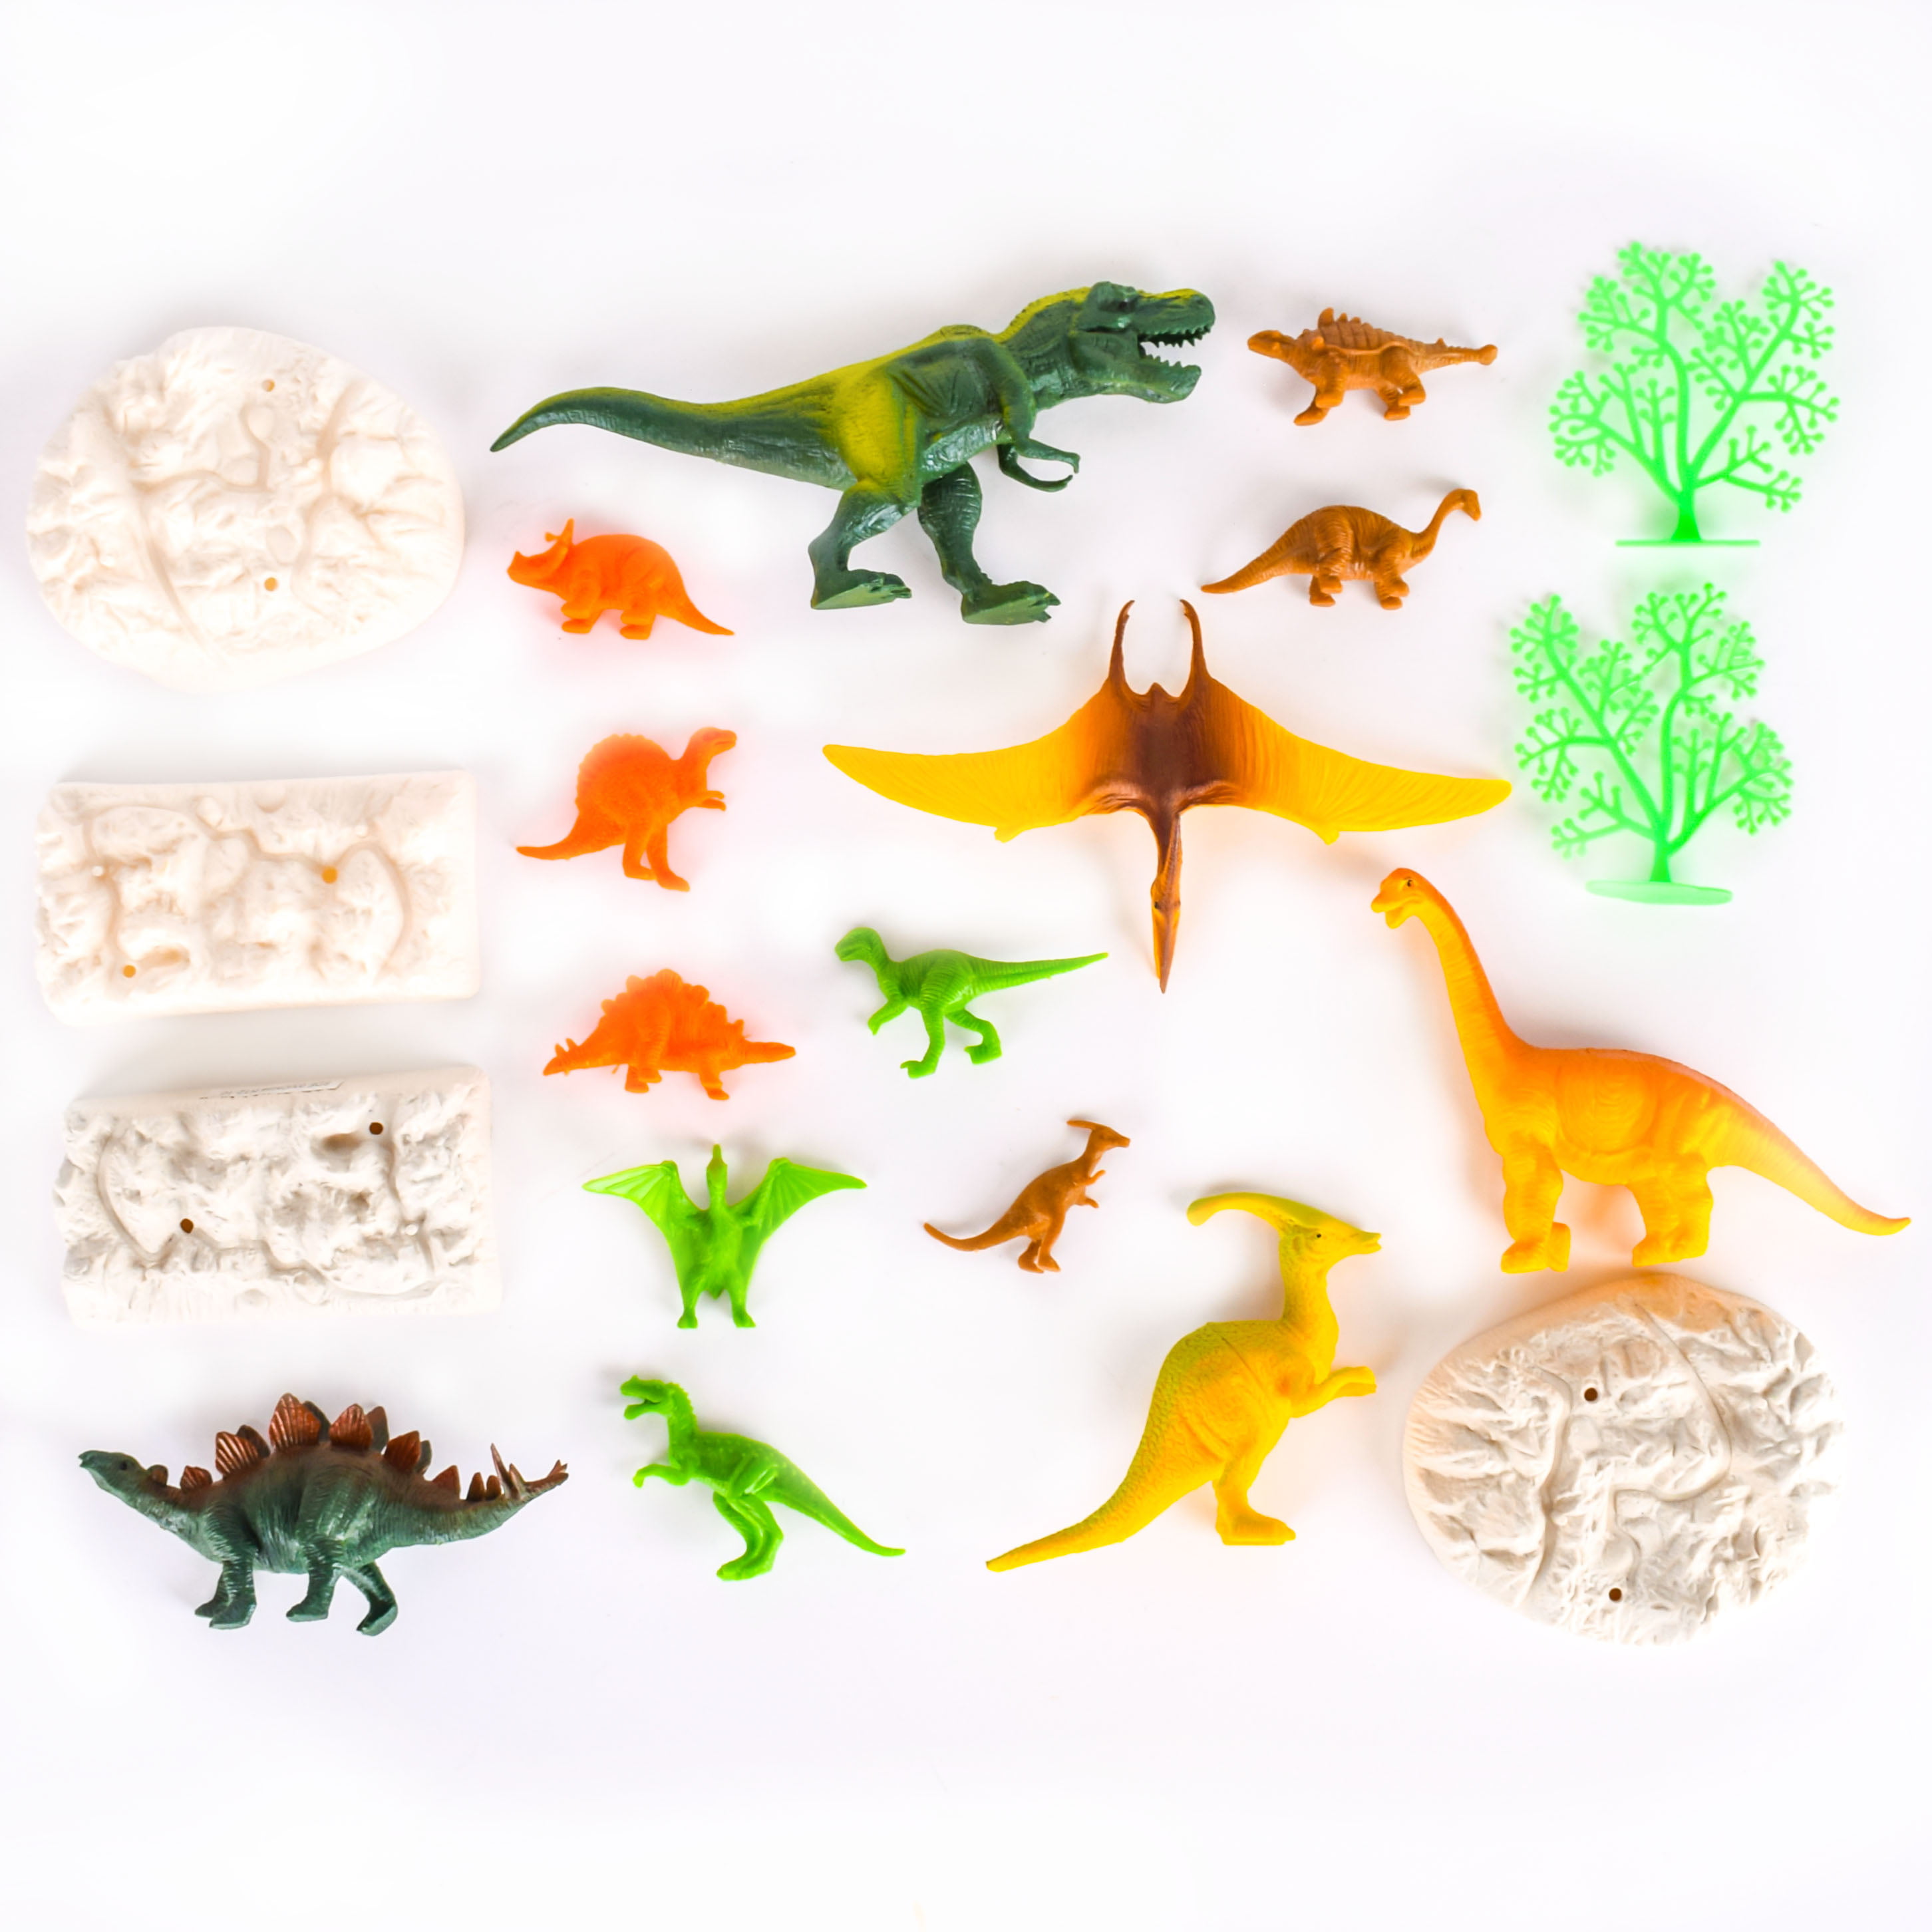 New Felt Volcanoe Handmade Dinosaur Pretend Play Set For Children Kids Gift Toy 